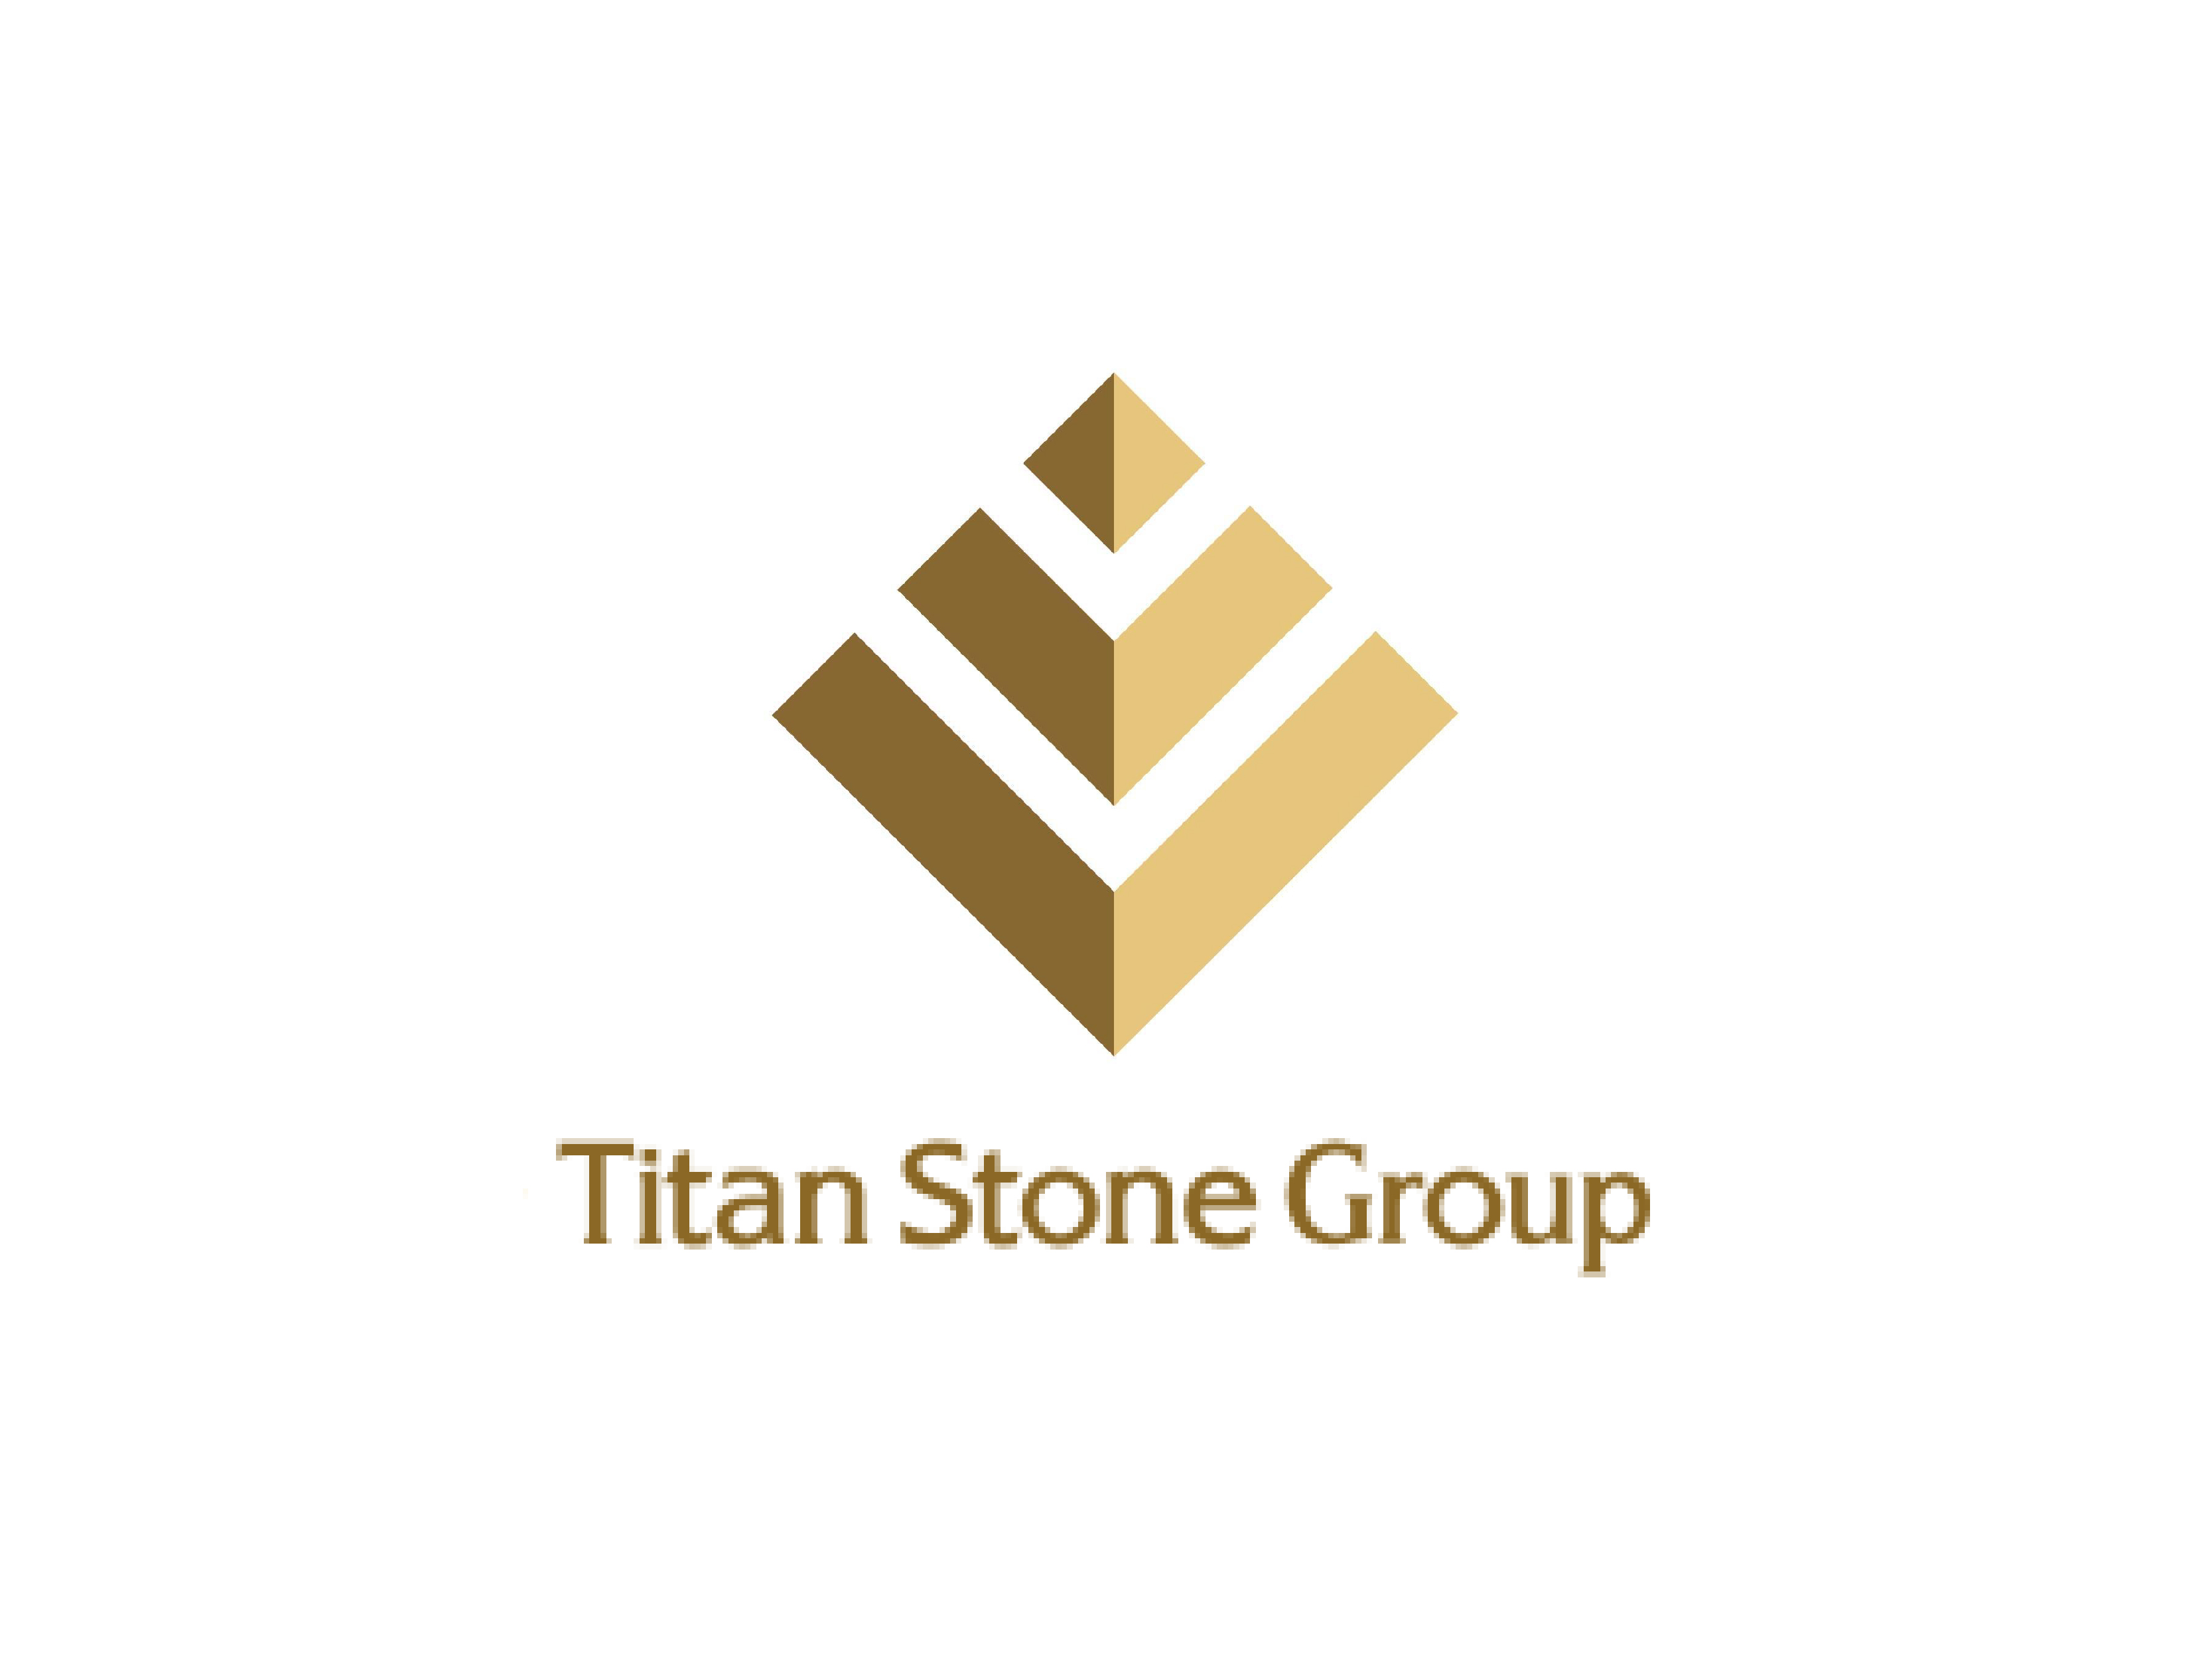 Titan Stone Group